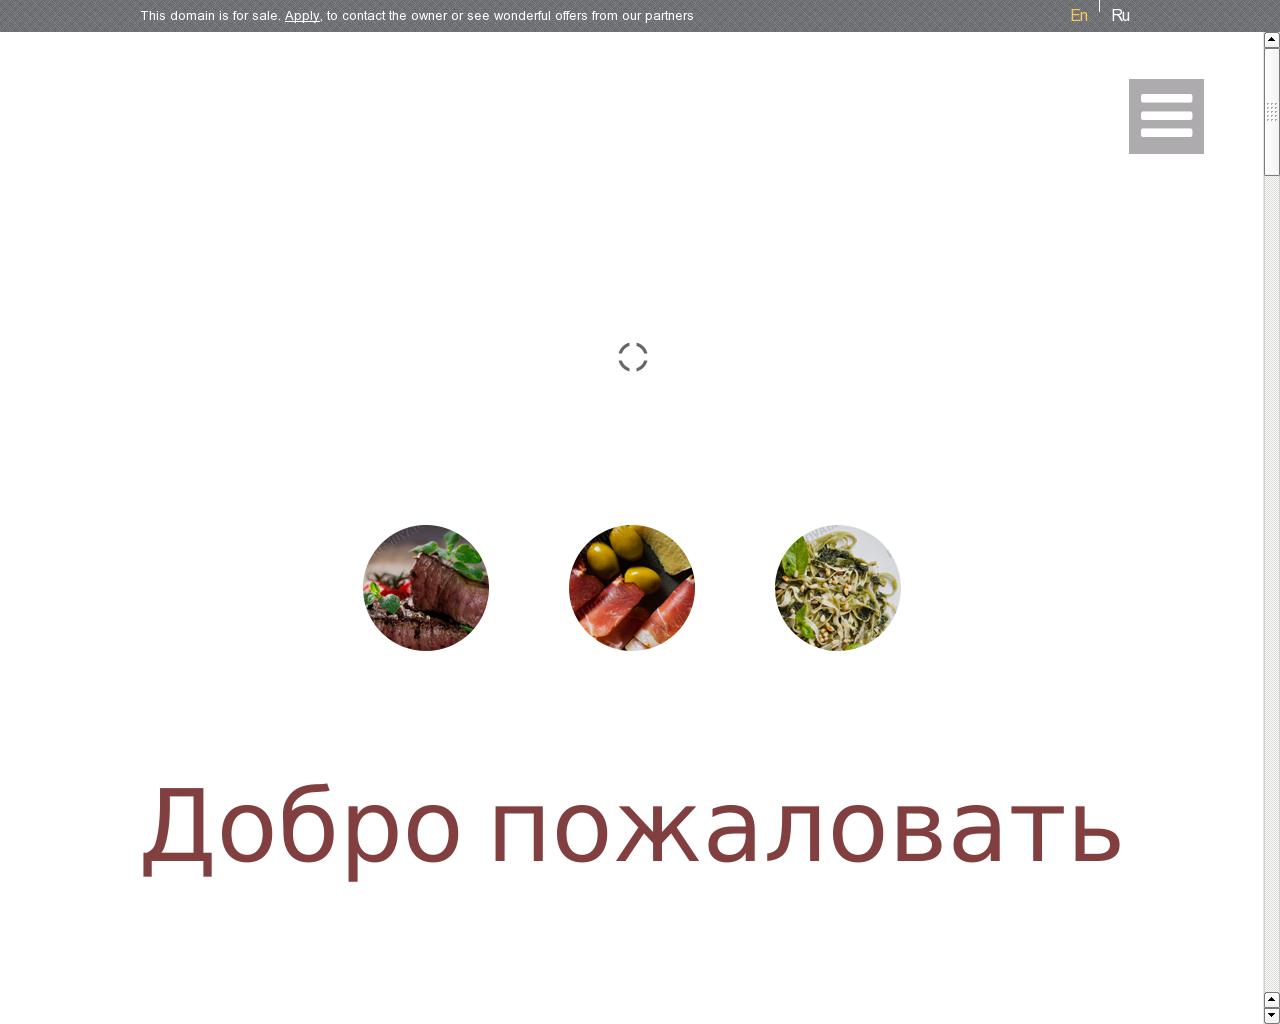 Изображение сайта edada.ru в разрешении 1280x1024